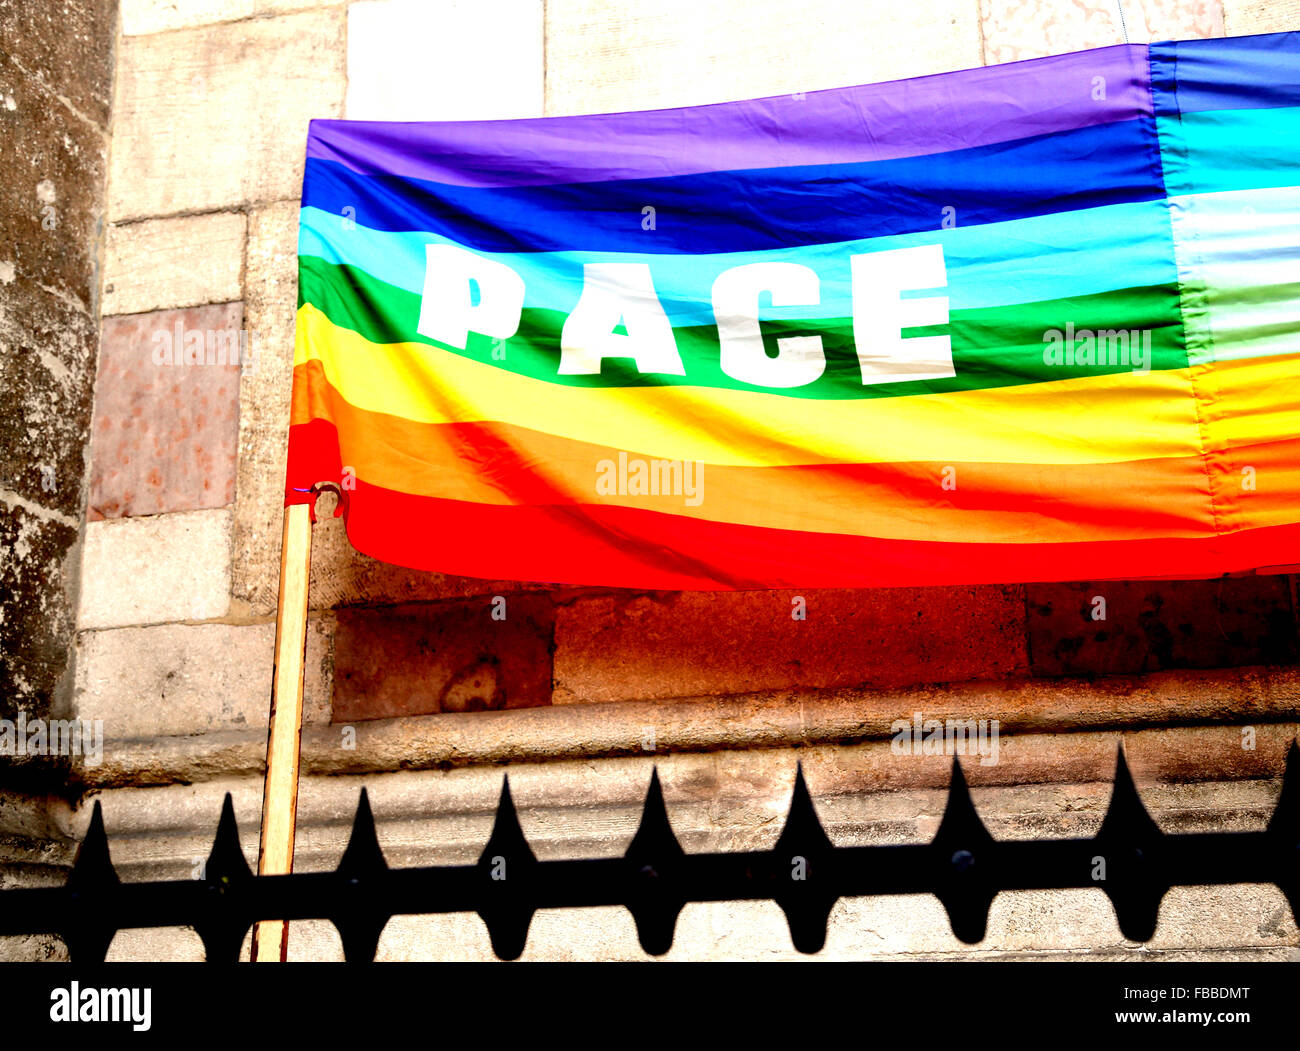 mehrfarbige Regenbogenfahne Frieden während einer Demonstration der italienischen Pazifisten in einer italienischen Stadt hinter Gitter Stockfoto